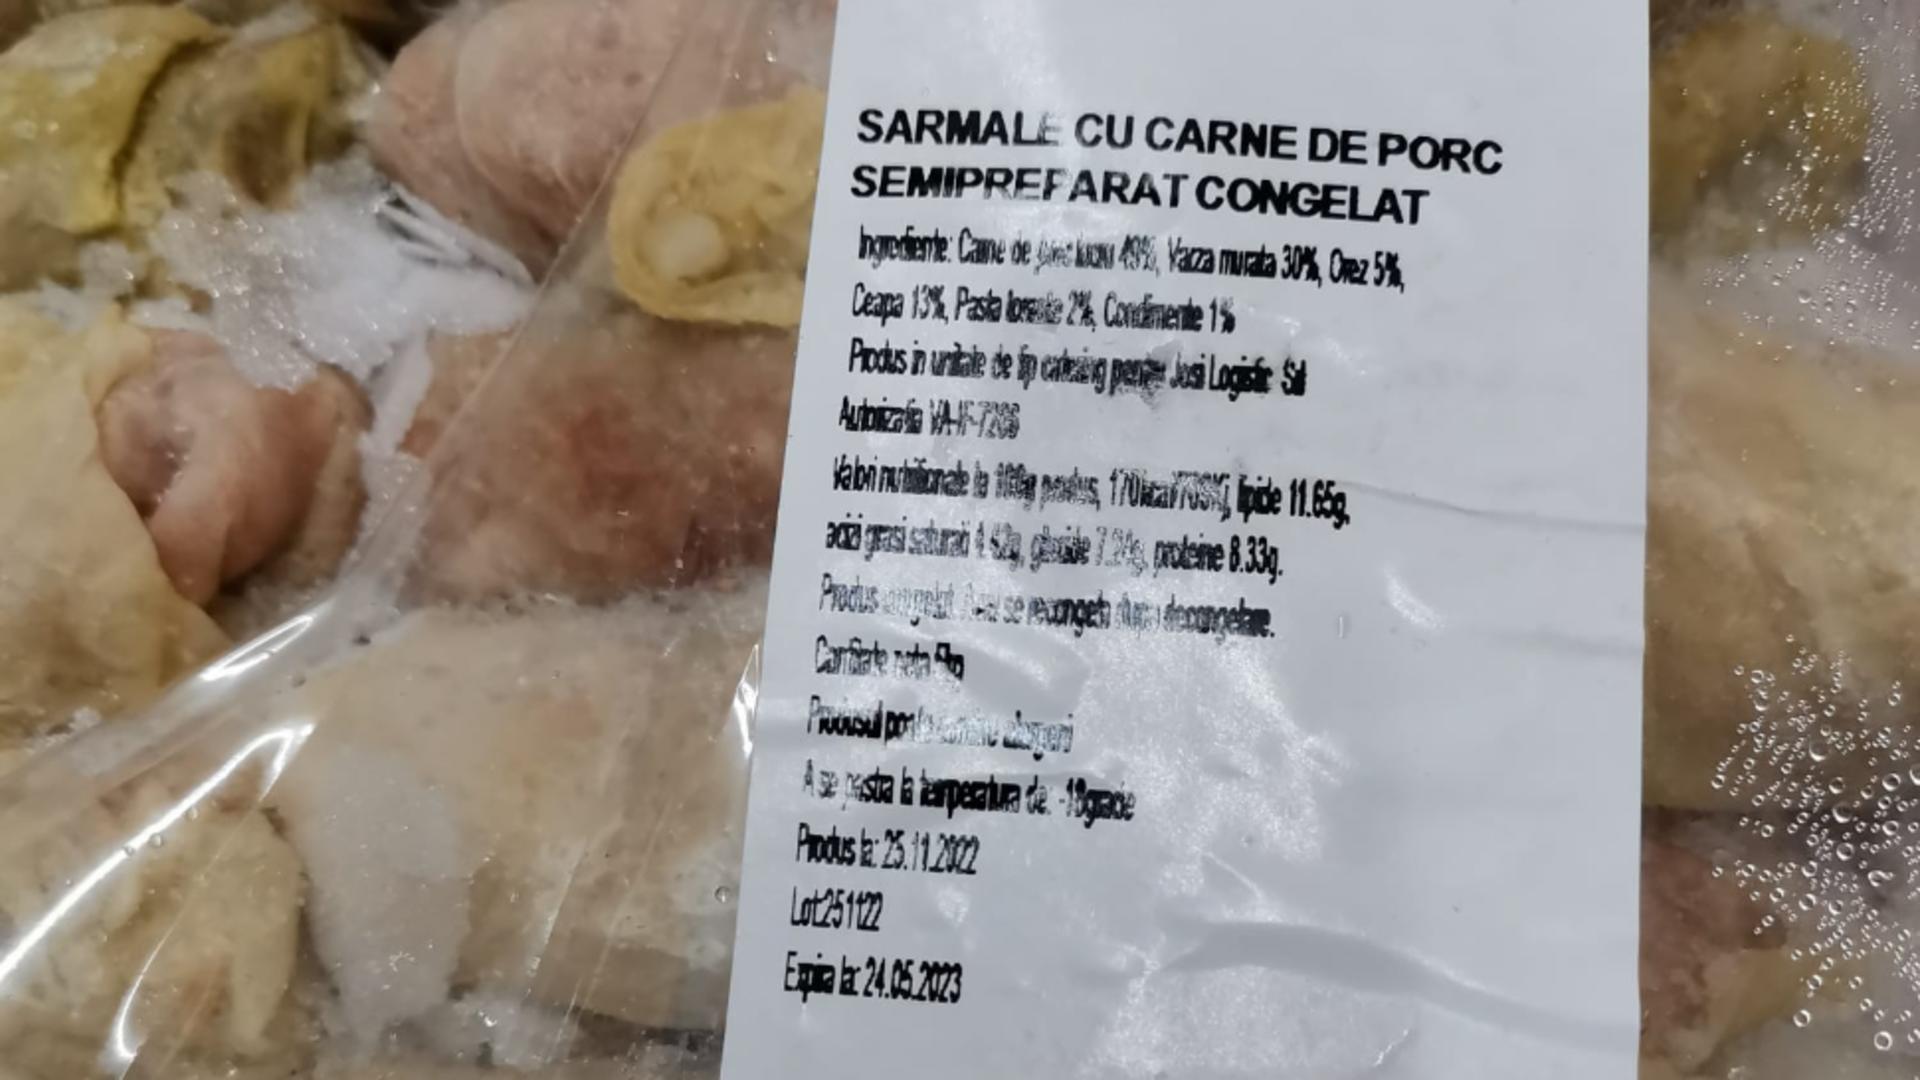 CJPC Satu Mare a descoperit 199 kilograme de sarmale alterate. Foto: Satu Mare Media